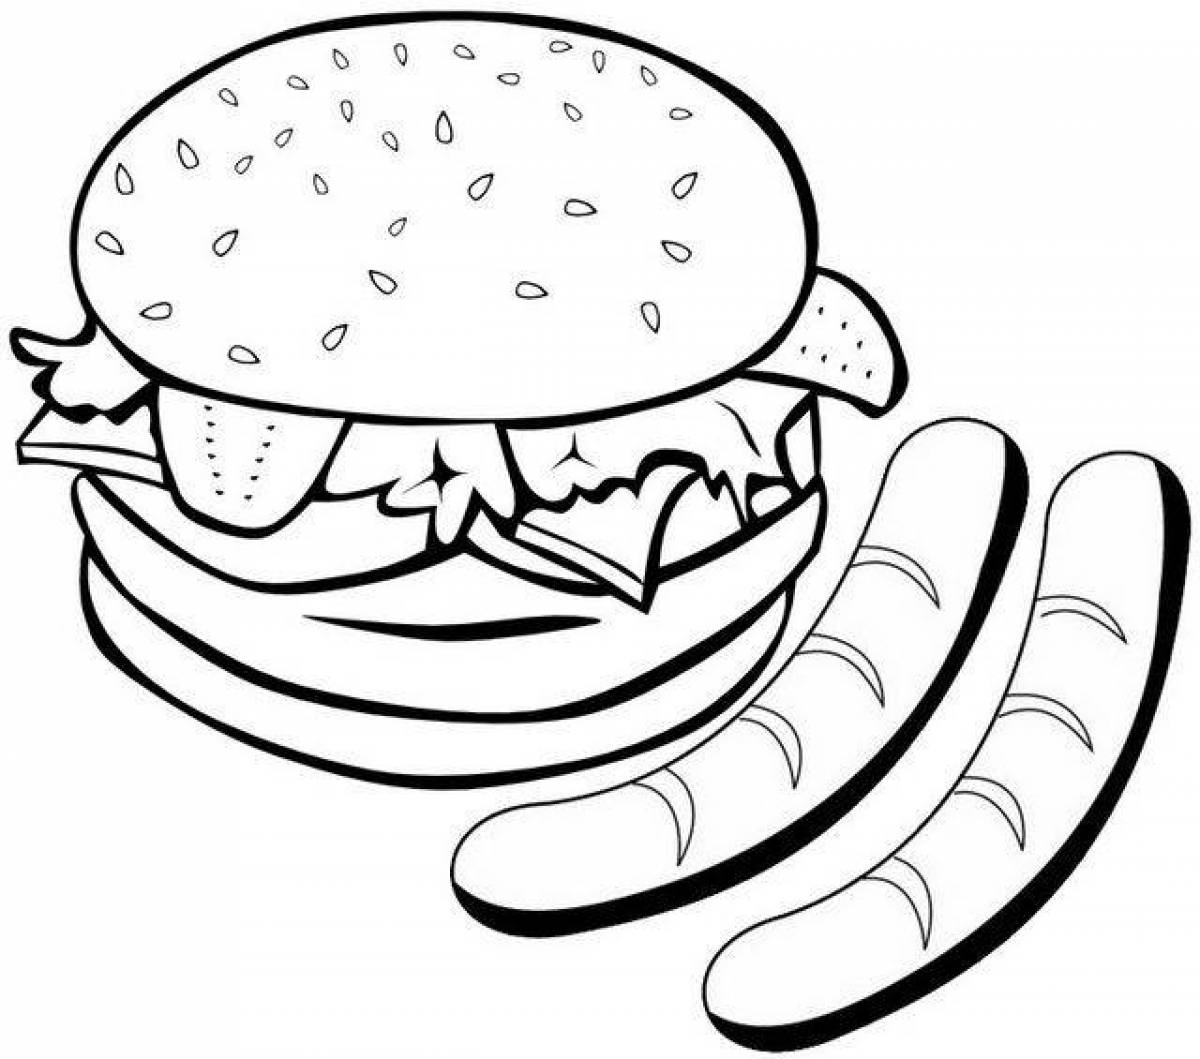 A delicious burger coloring page